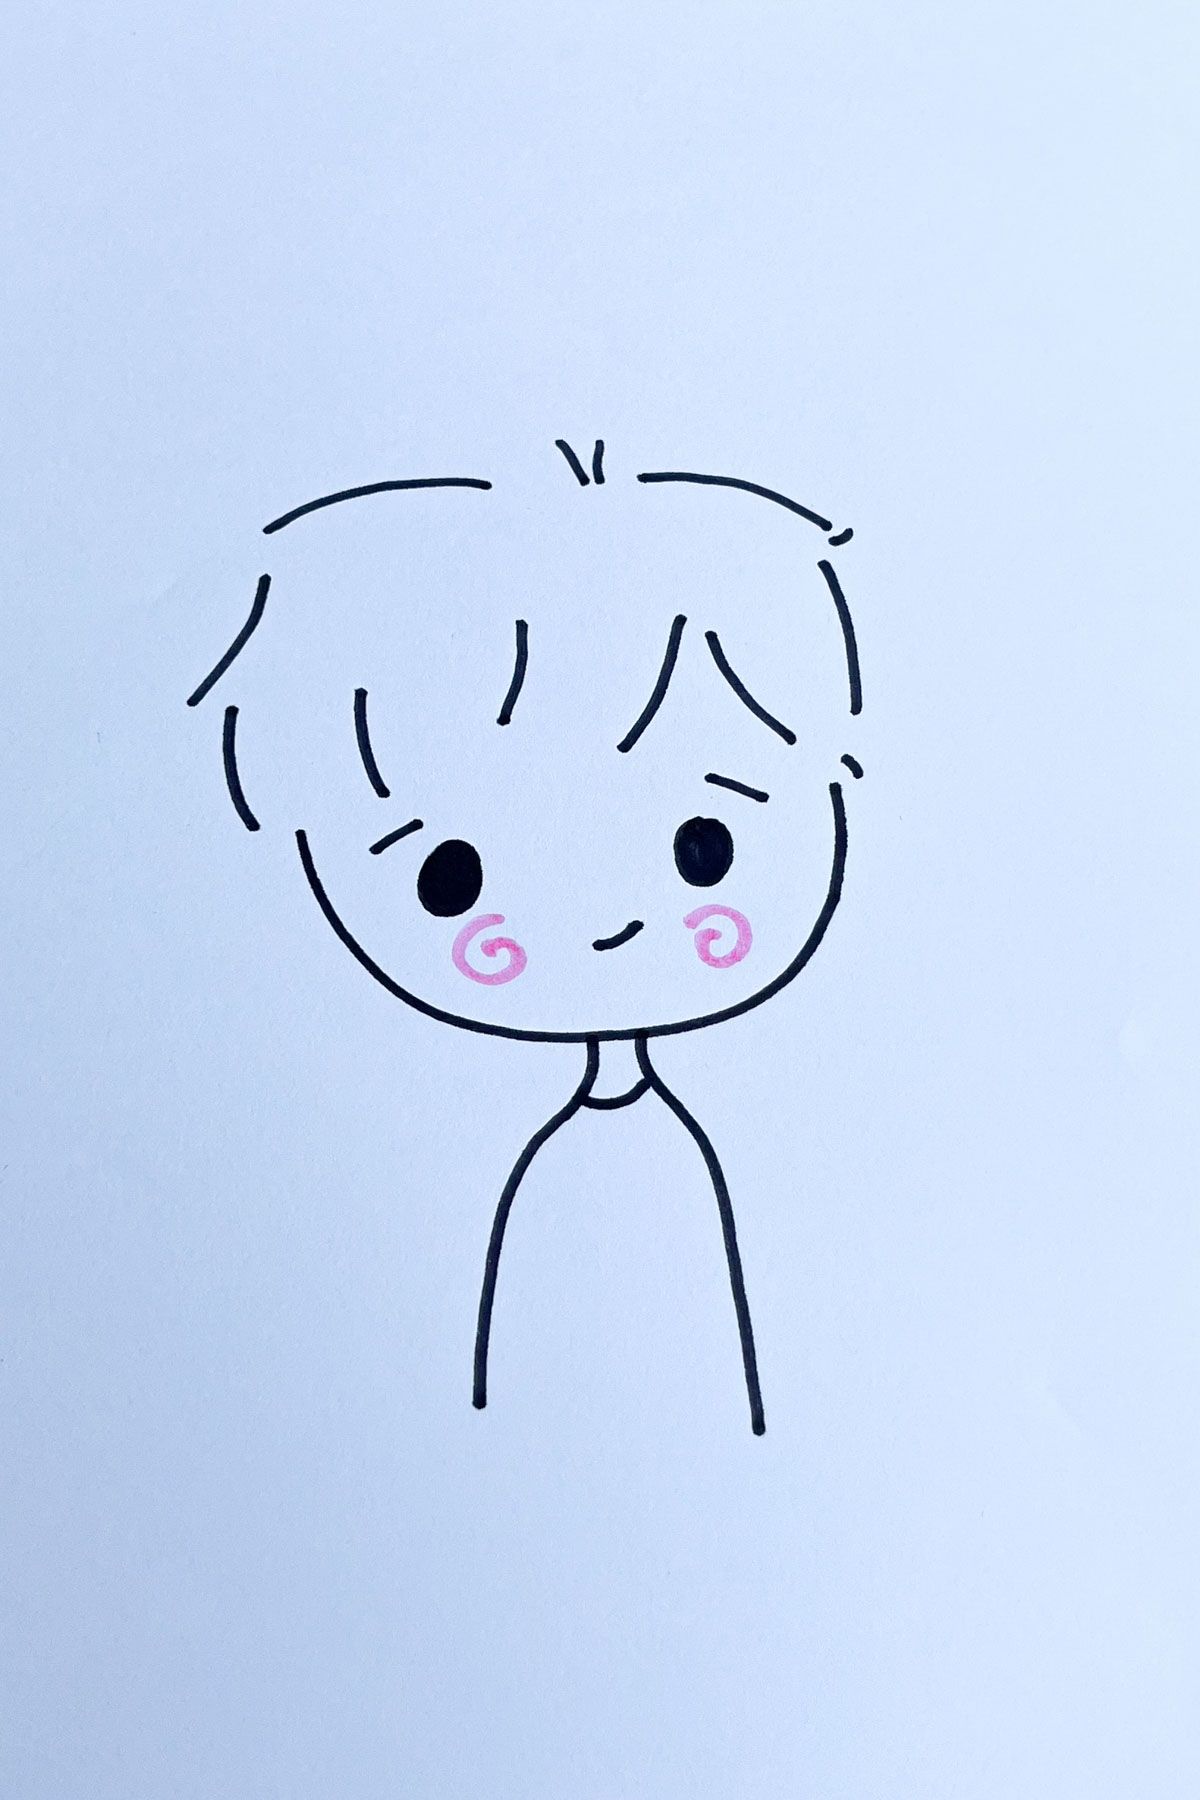 blushing boy anime drawing